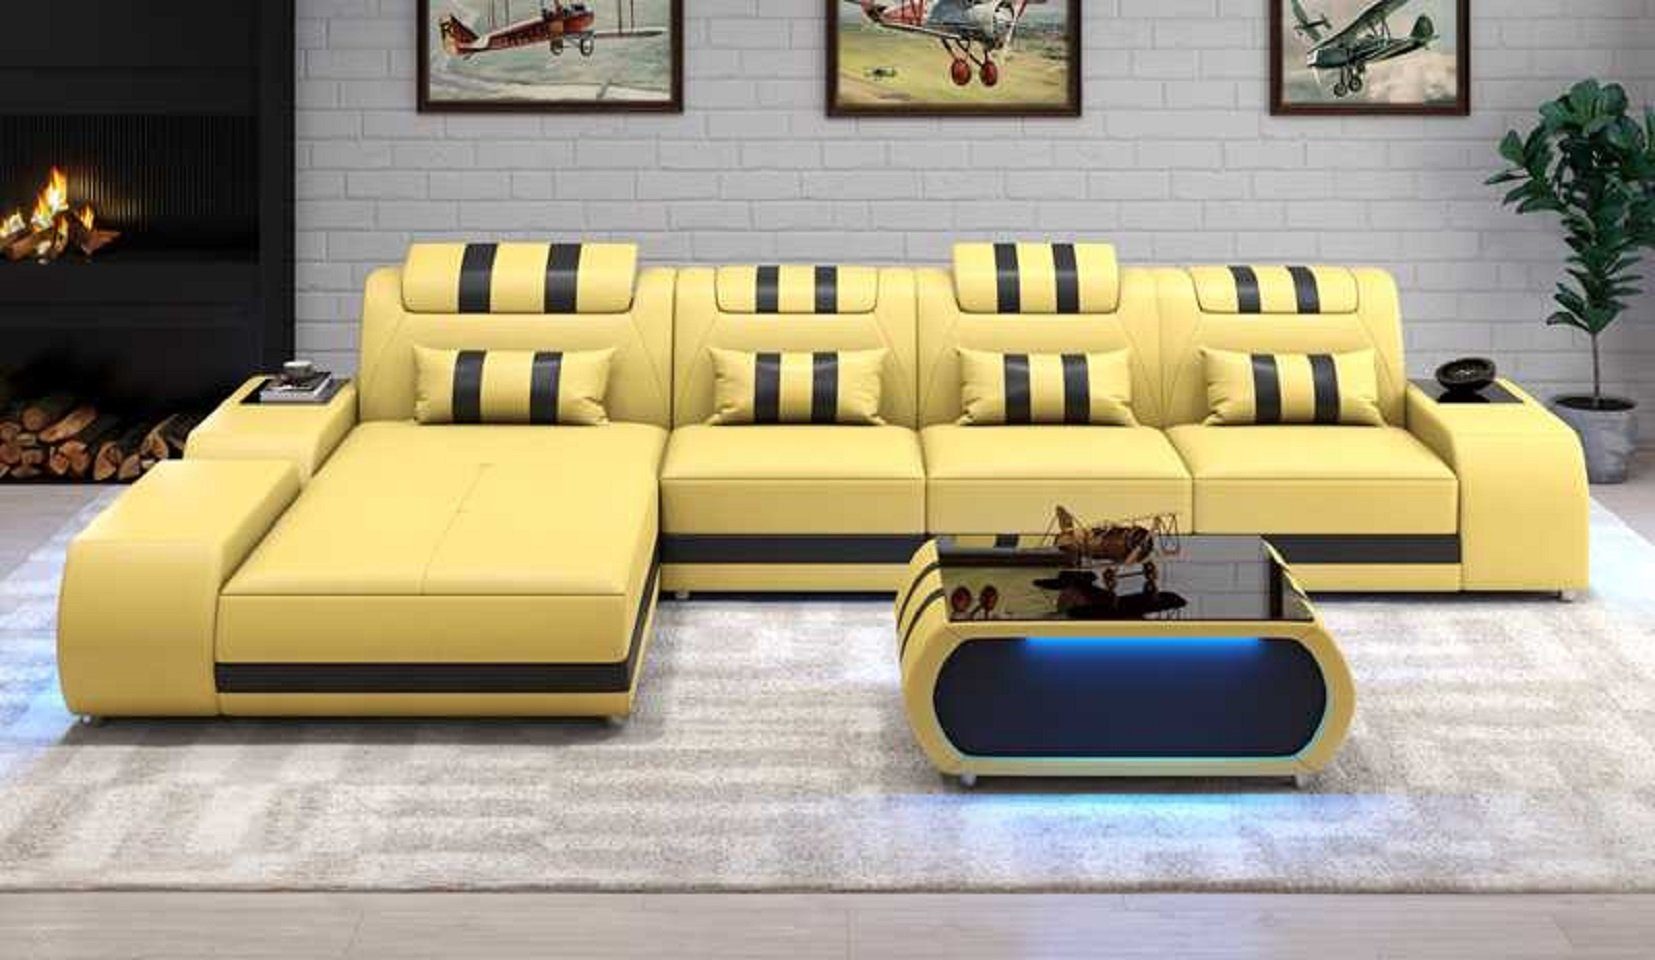 JVmoebel Ecksofa Eckgarnitur Ecksofa L Form Ledersofa Sofa Couch Luxus Design Couchen, 3 Teile, Made in Europe Beige